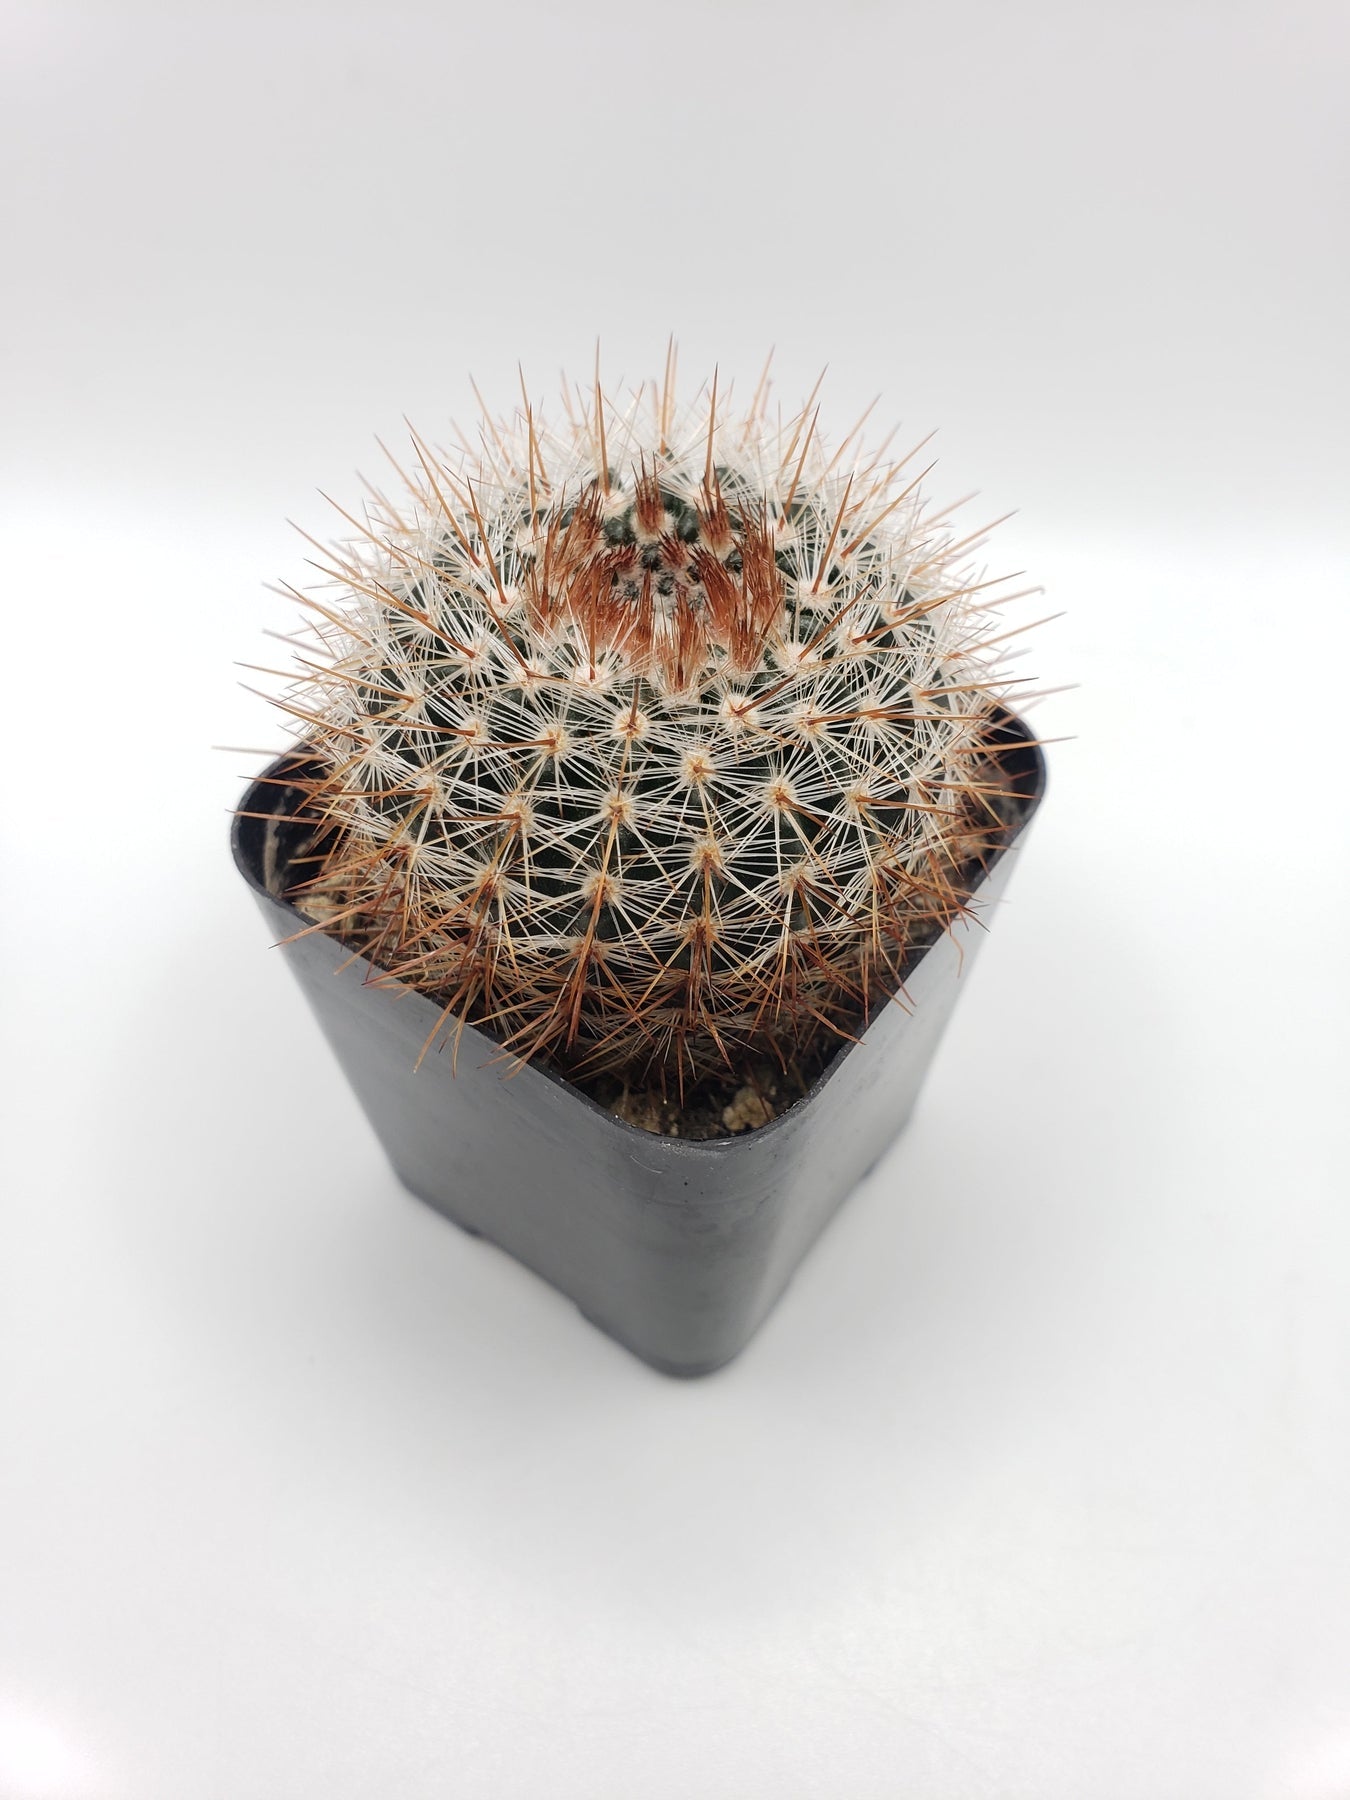 #13C Parodia Erubescens 2"-Cactus - Small - Exact Type-The Succulent Source